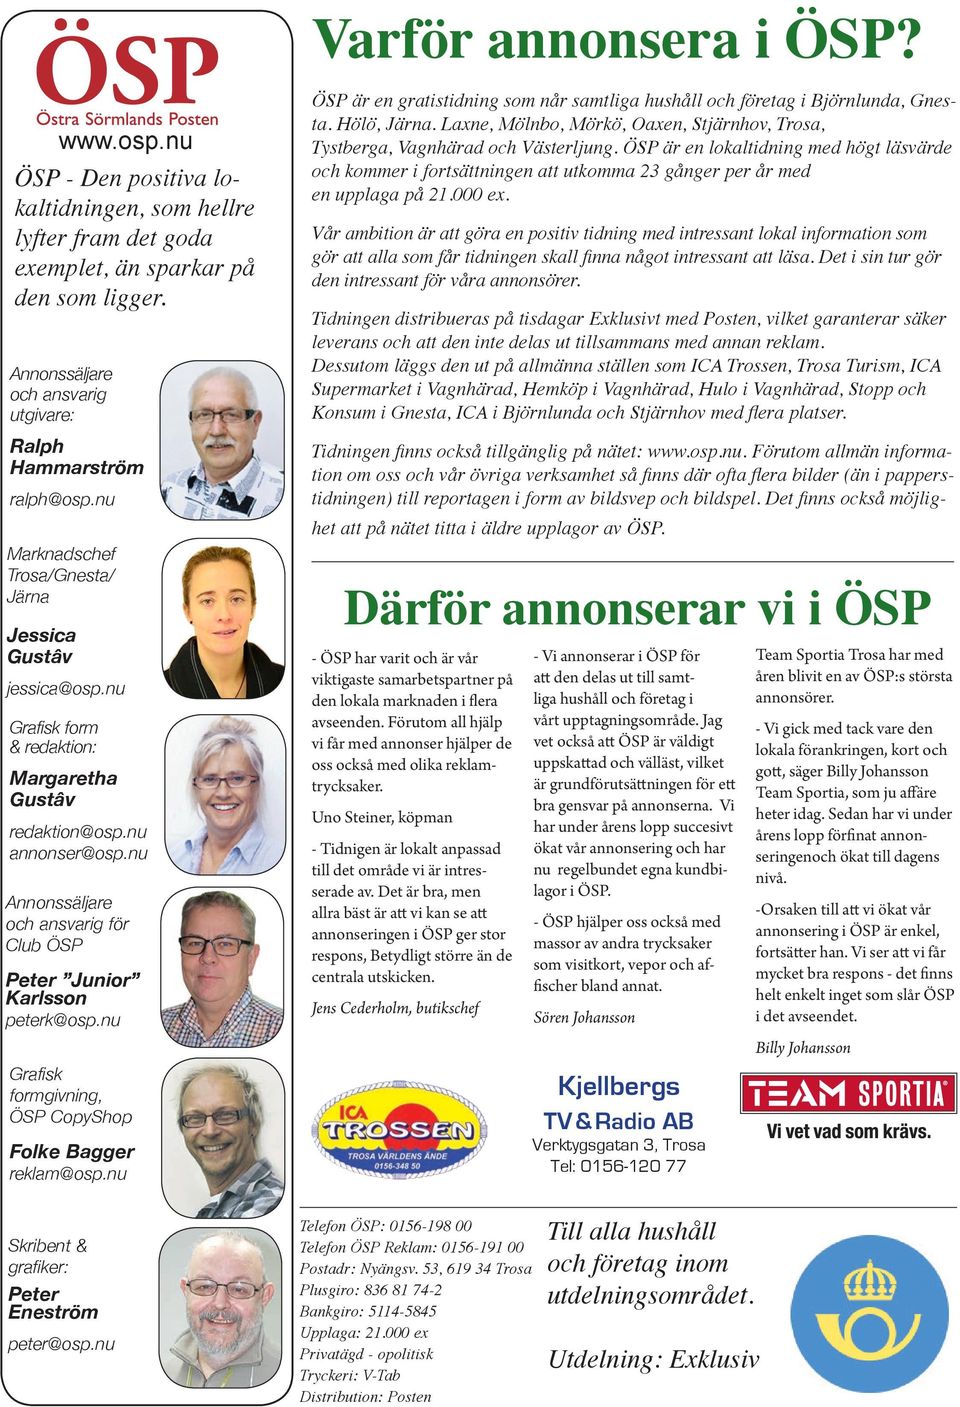 nu annonser@osp.nu Annonssäljare och ansvarig för Club ÖSP Peter Junior Karlsson peterk@osp.nu Grafisk formgivning, ÖSP CopyShop Folke Bagger reklam@osp.